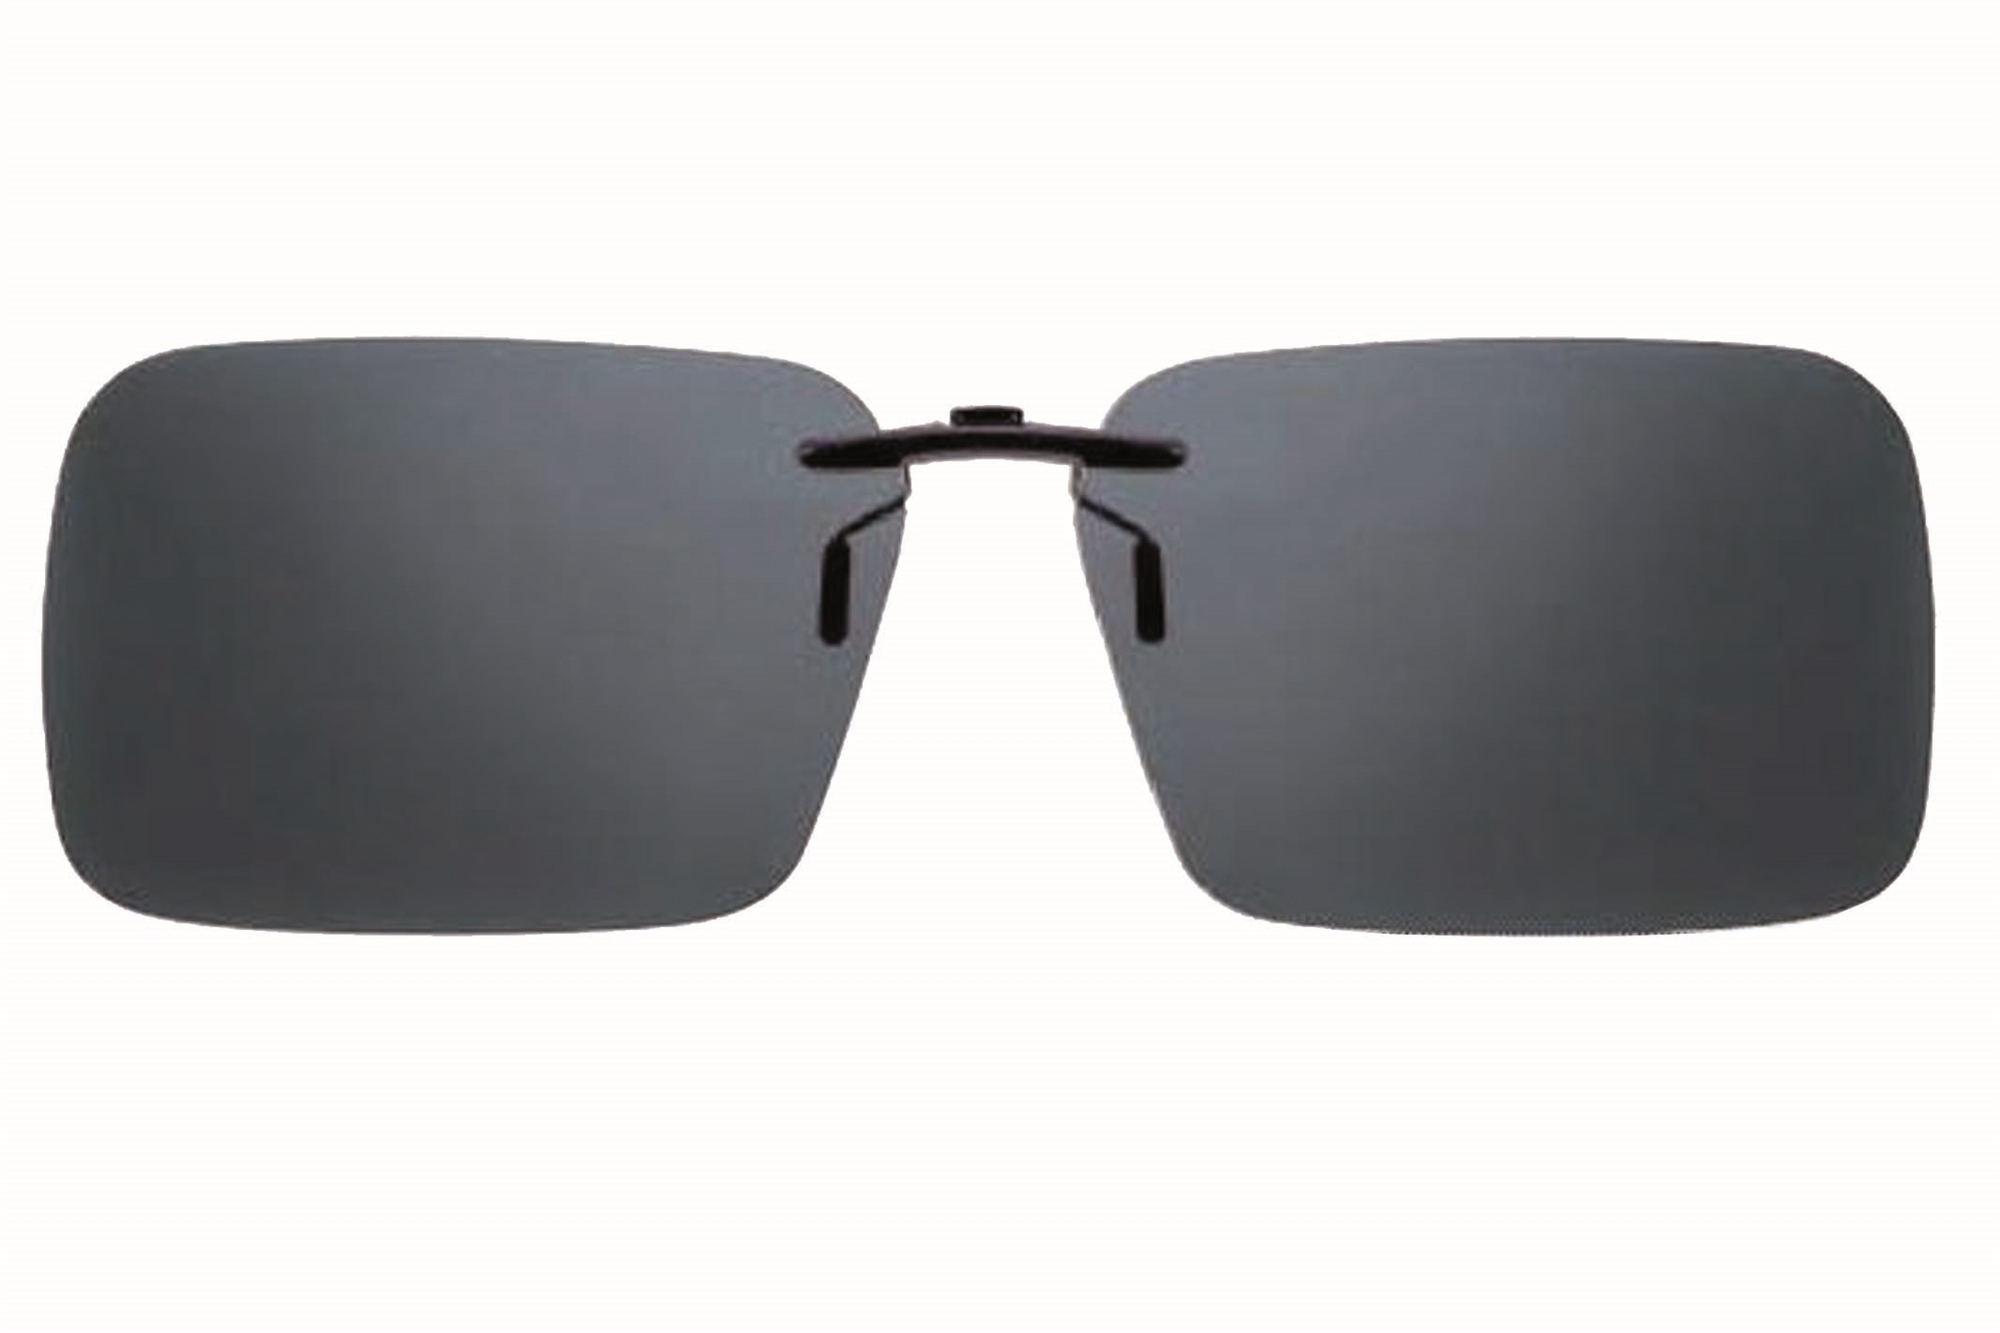 Solbrille - funktion - solbriller - Blødt etui